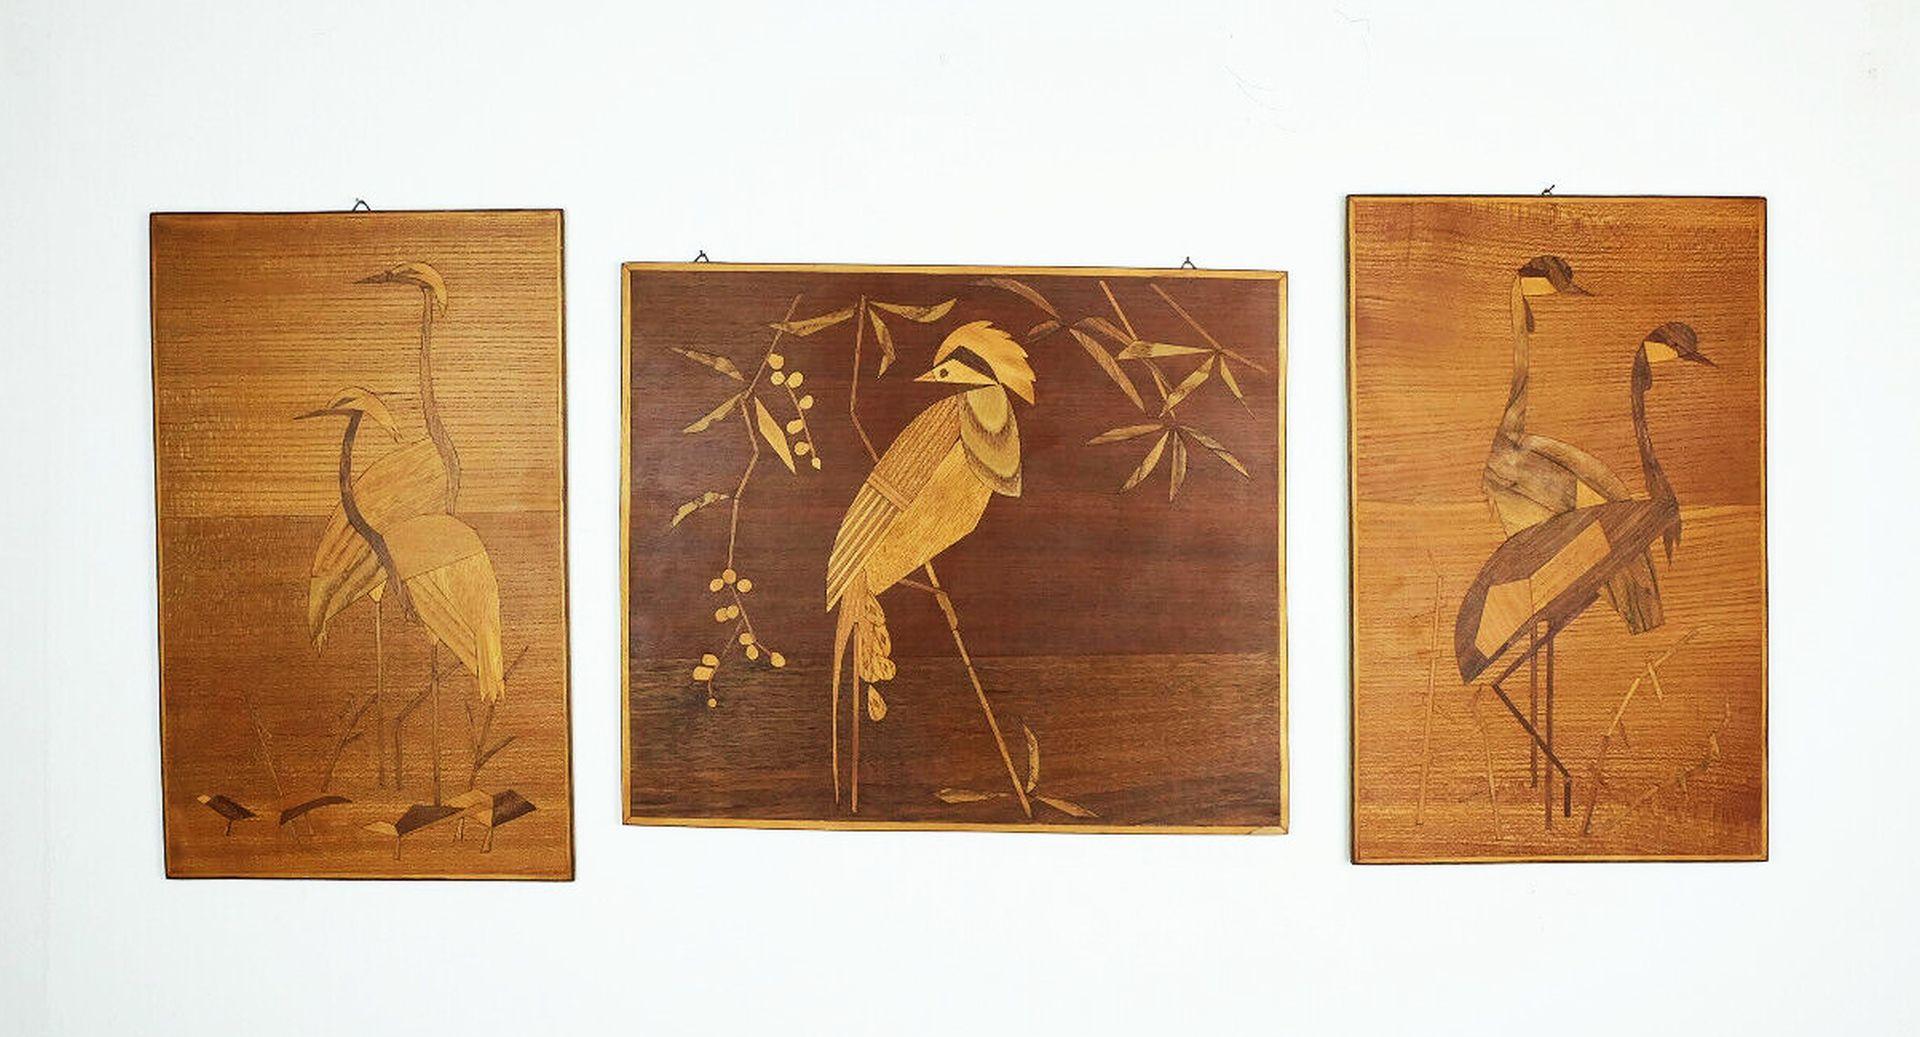 Set aus drei perfekt gearbeiteten Intarsienbildern aus den 1950er bis 60er Jahren. Verschiedene Holzfurniere auf Spanplatte, die Oberflächen sind geölt. Sehr schöne stilisierte Darstellung von Vögeln.

Ein typisches Kunstwerk aus der Mitte des